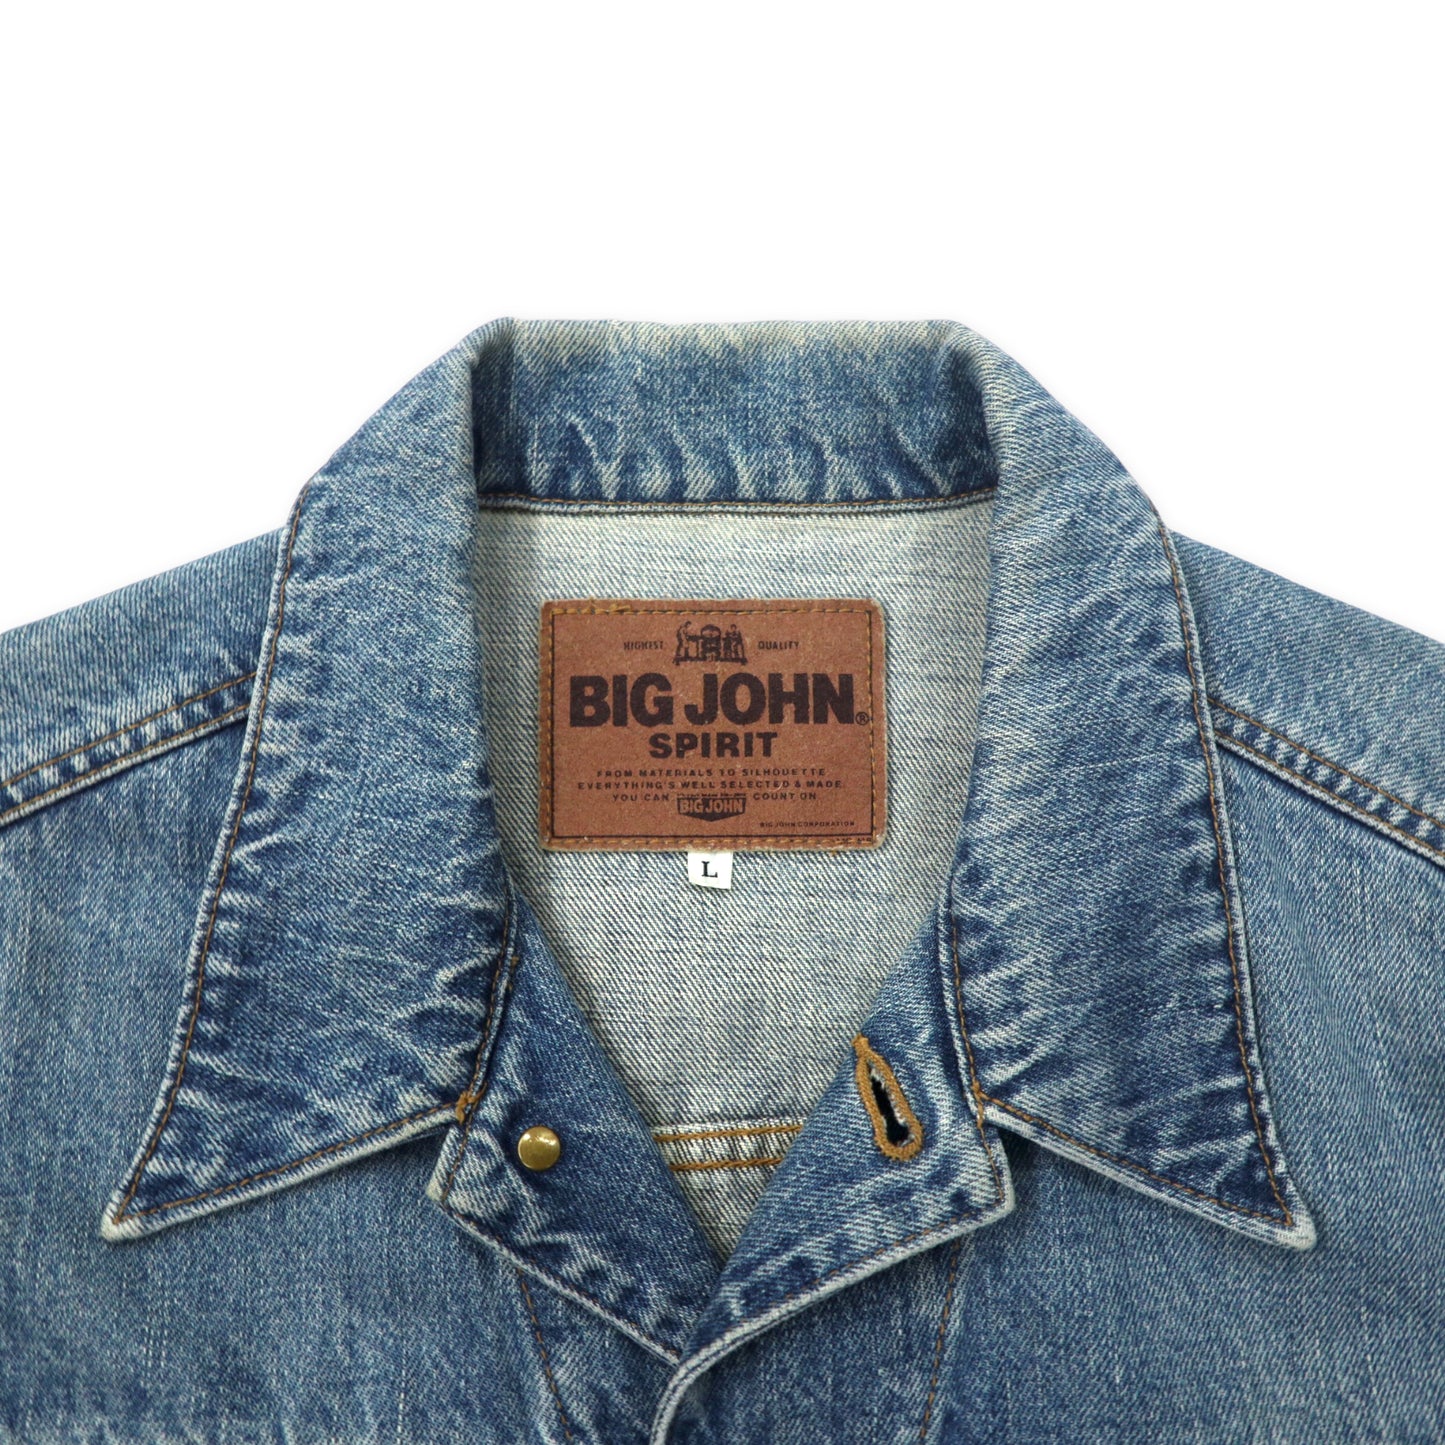 BIG JOHN SPIRIT 90年代 デニムジャケット Gジャン L ブルー コットン SP601 日本製